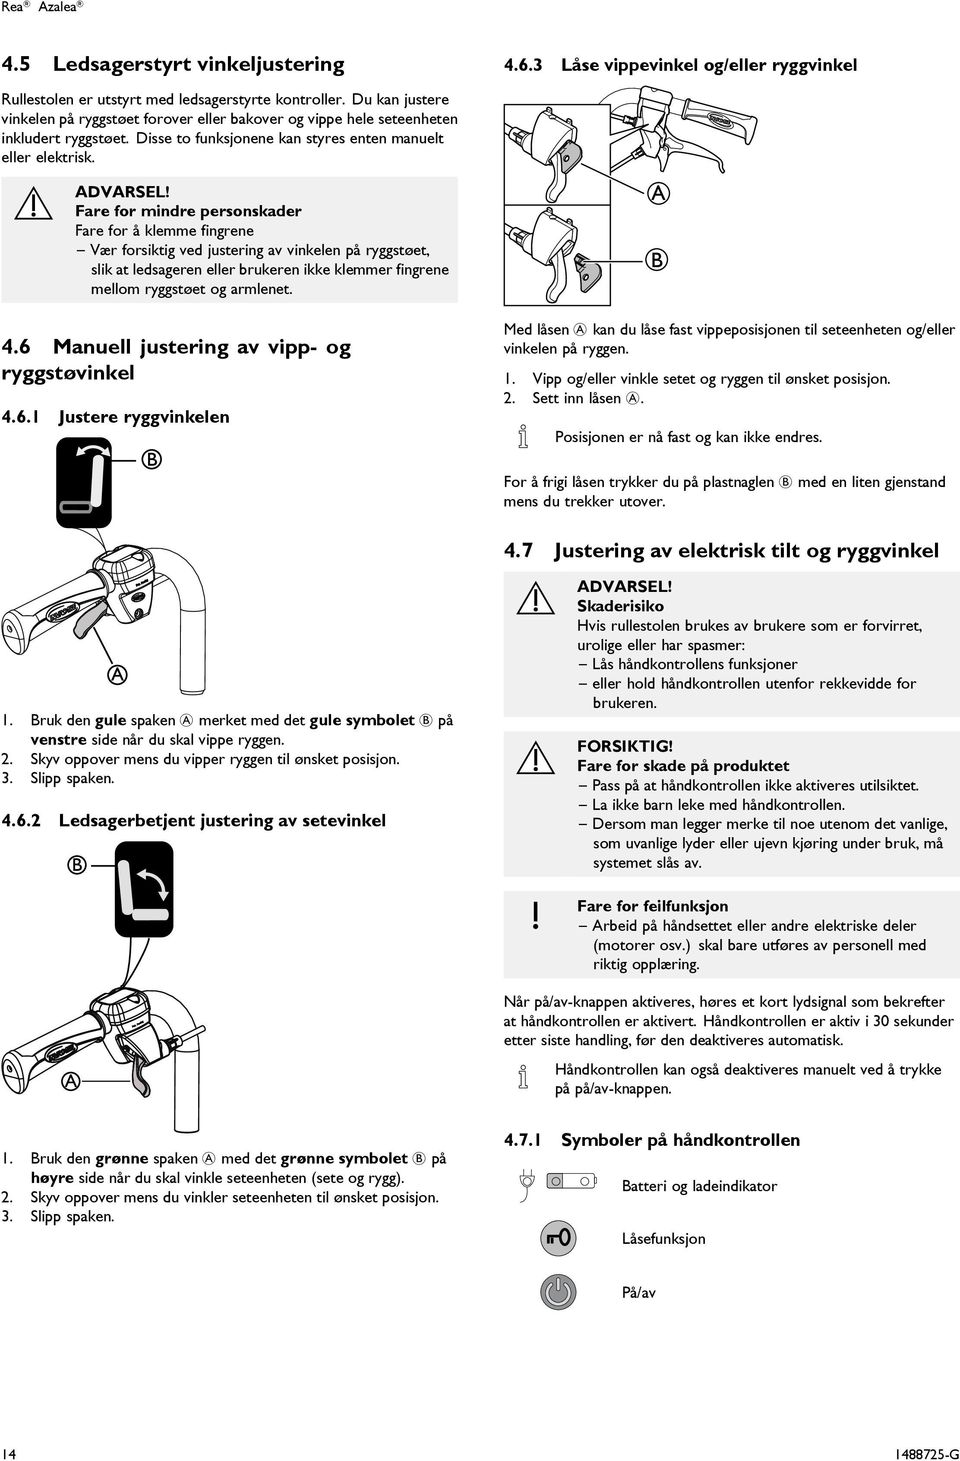 Fare for mindre personskader Fare for å klemme fingrene Vær forsiktig ved justering av vinkelen på ryggstøet, slik at ledsageren eller brukeren ikke klemmer fingrene mellom ryggstøet og armlenet. 4.